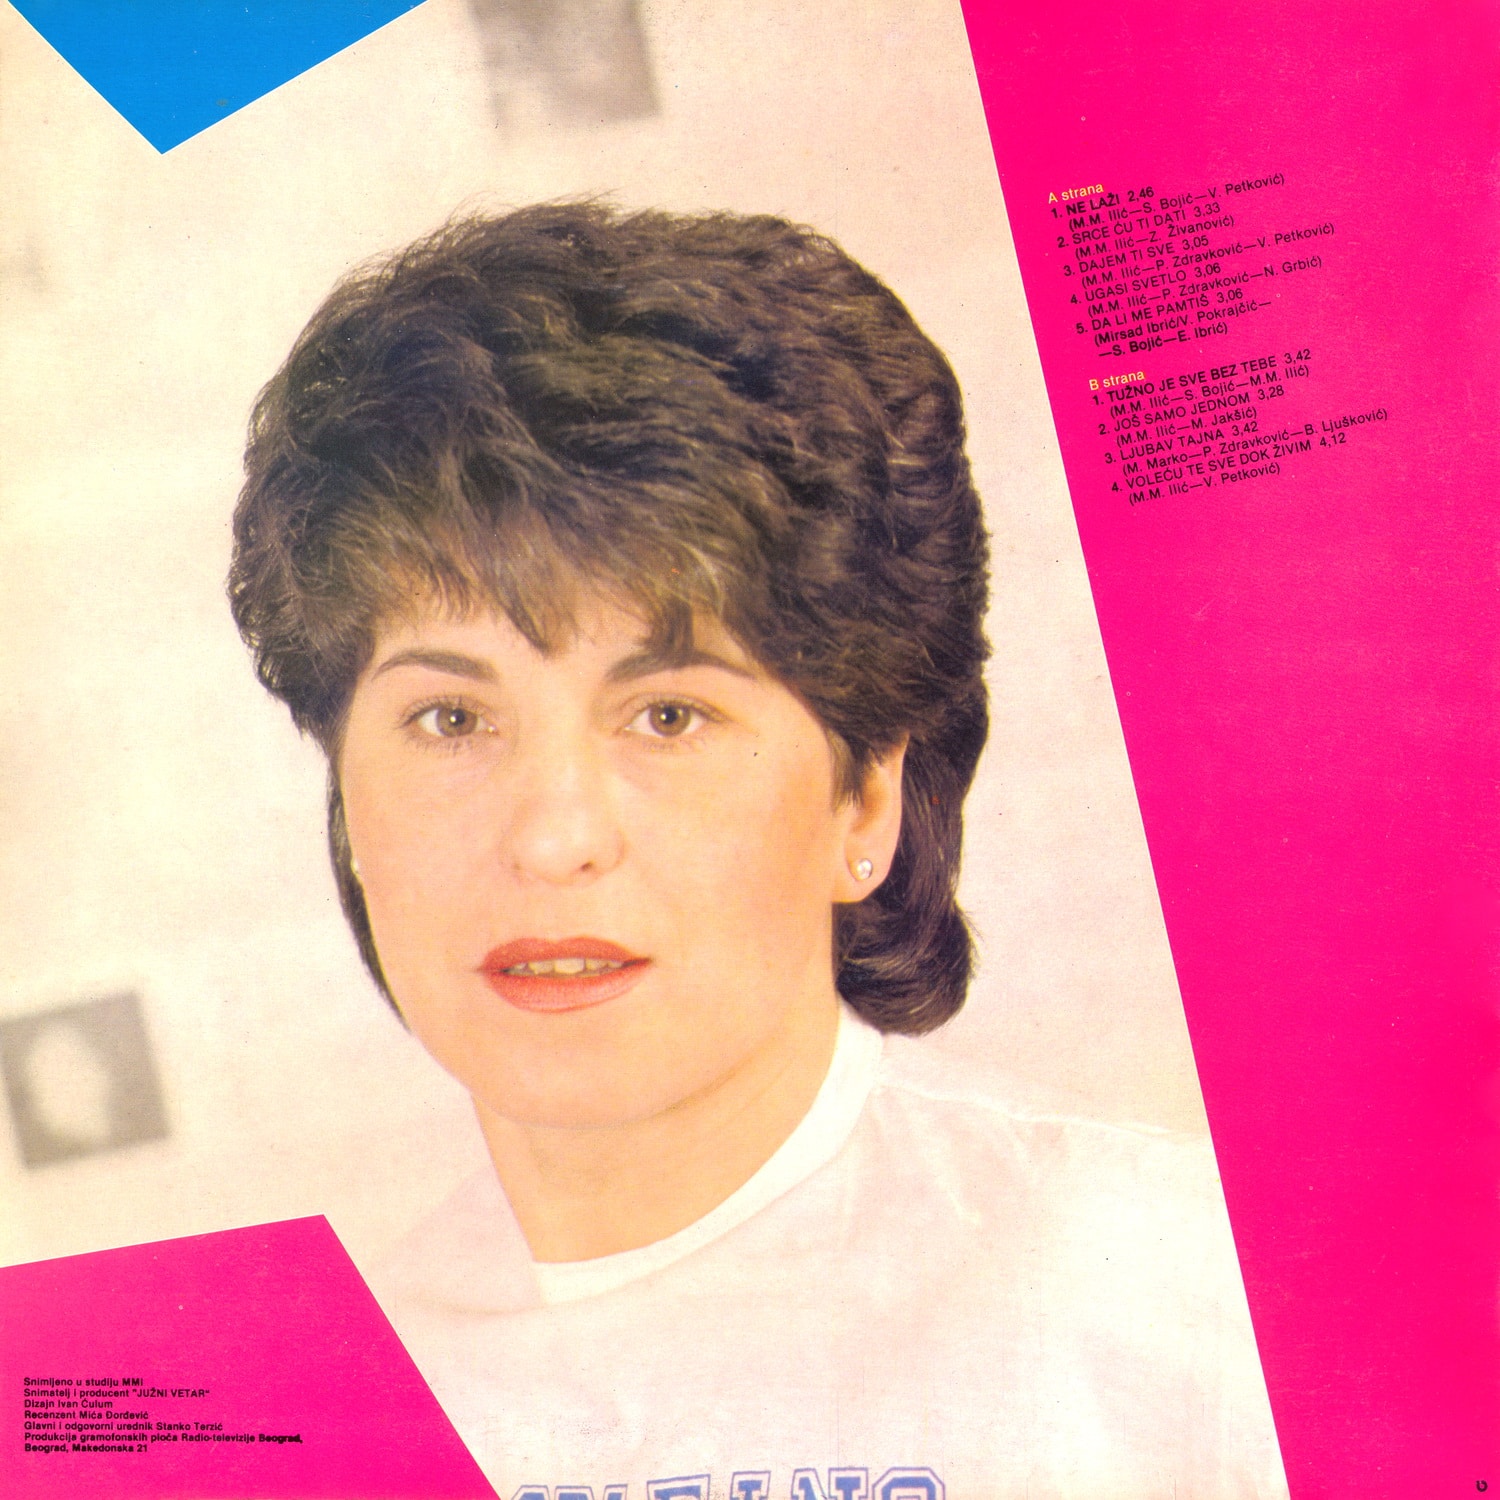 Semsa Suljakovic 1985 z